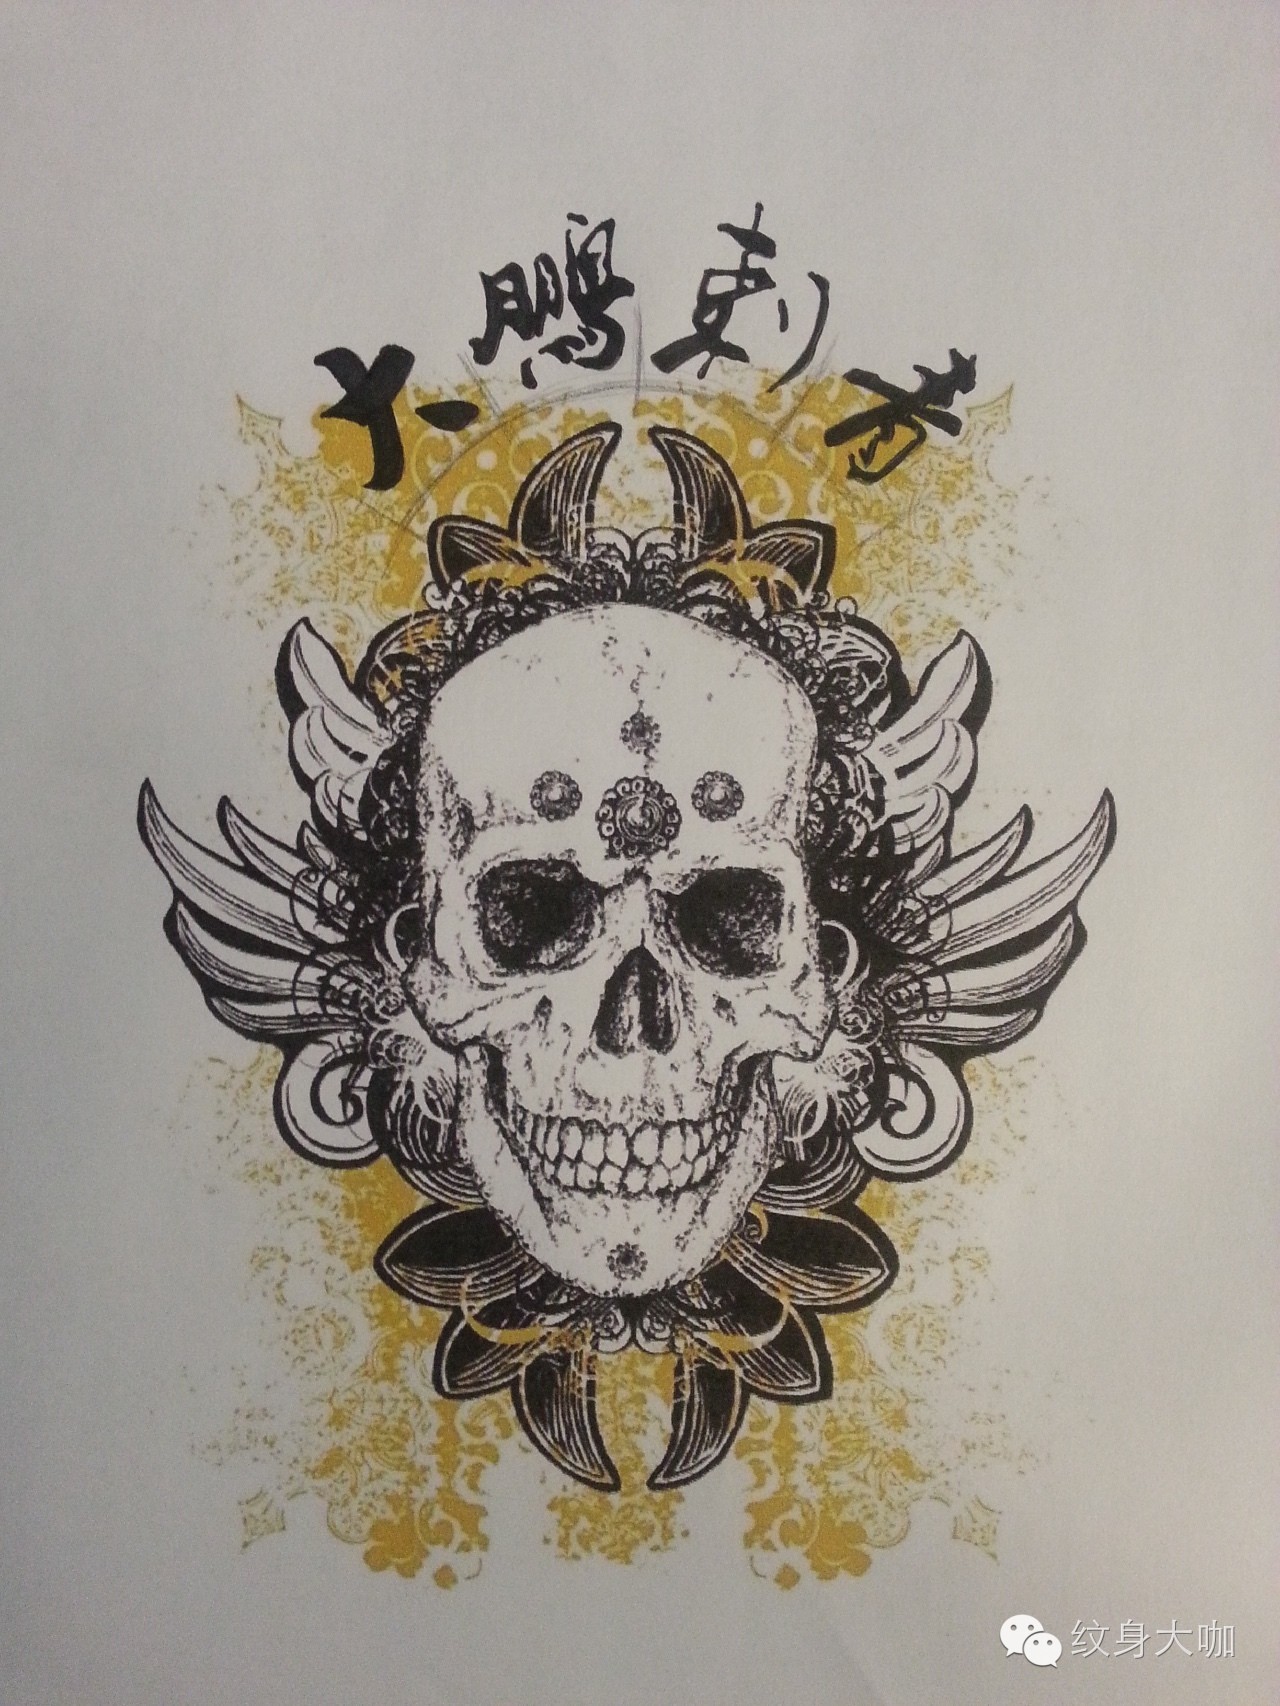 「签约纹身师推荐」—张学洋—北京798大鹏刺青